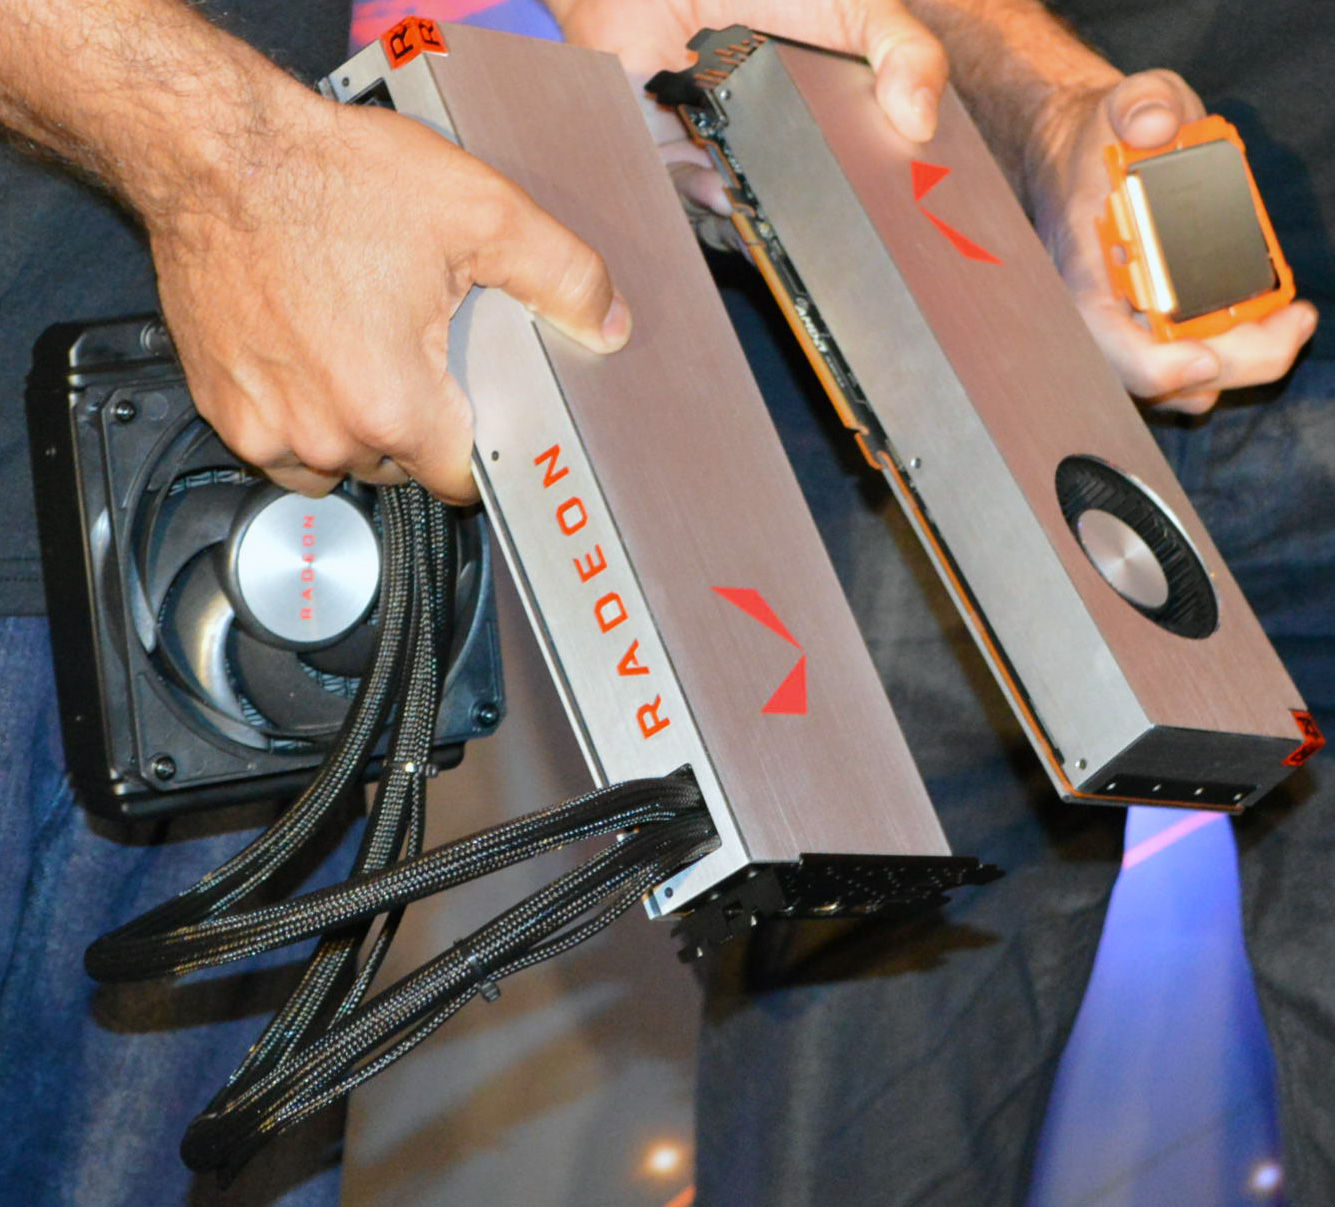 AMD Radeon RX Vega ekran kartları için fiyat bilgileri